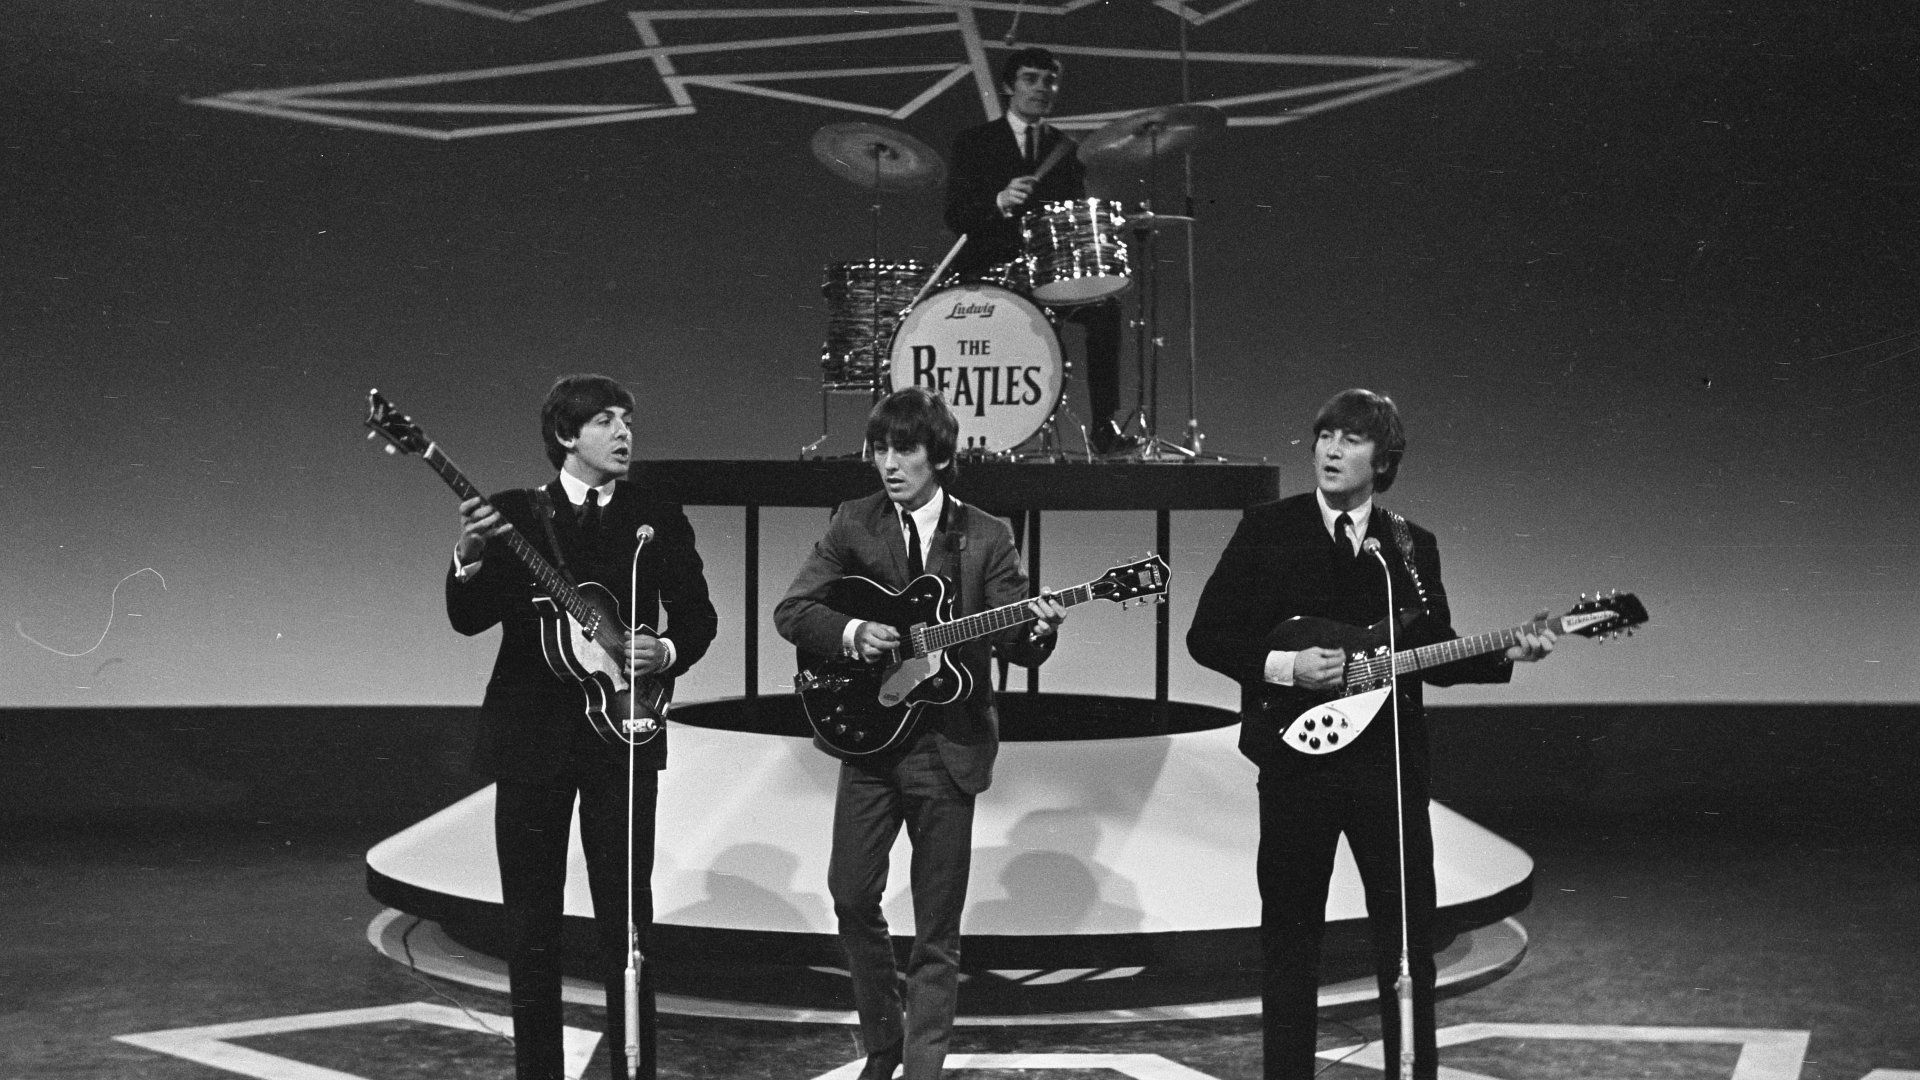 The Beatles publica avui nova cançó amb IA: tot el que se sap de "Now and Then"